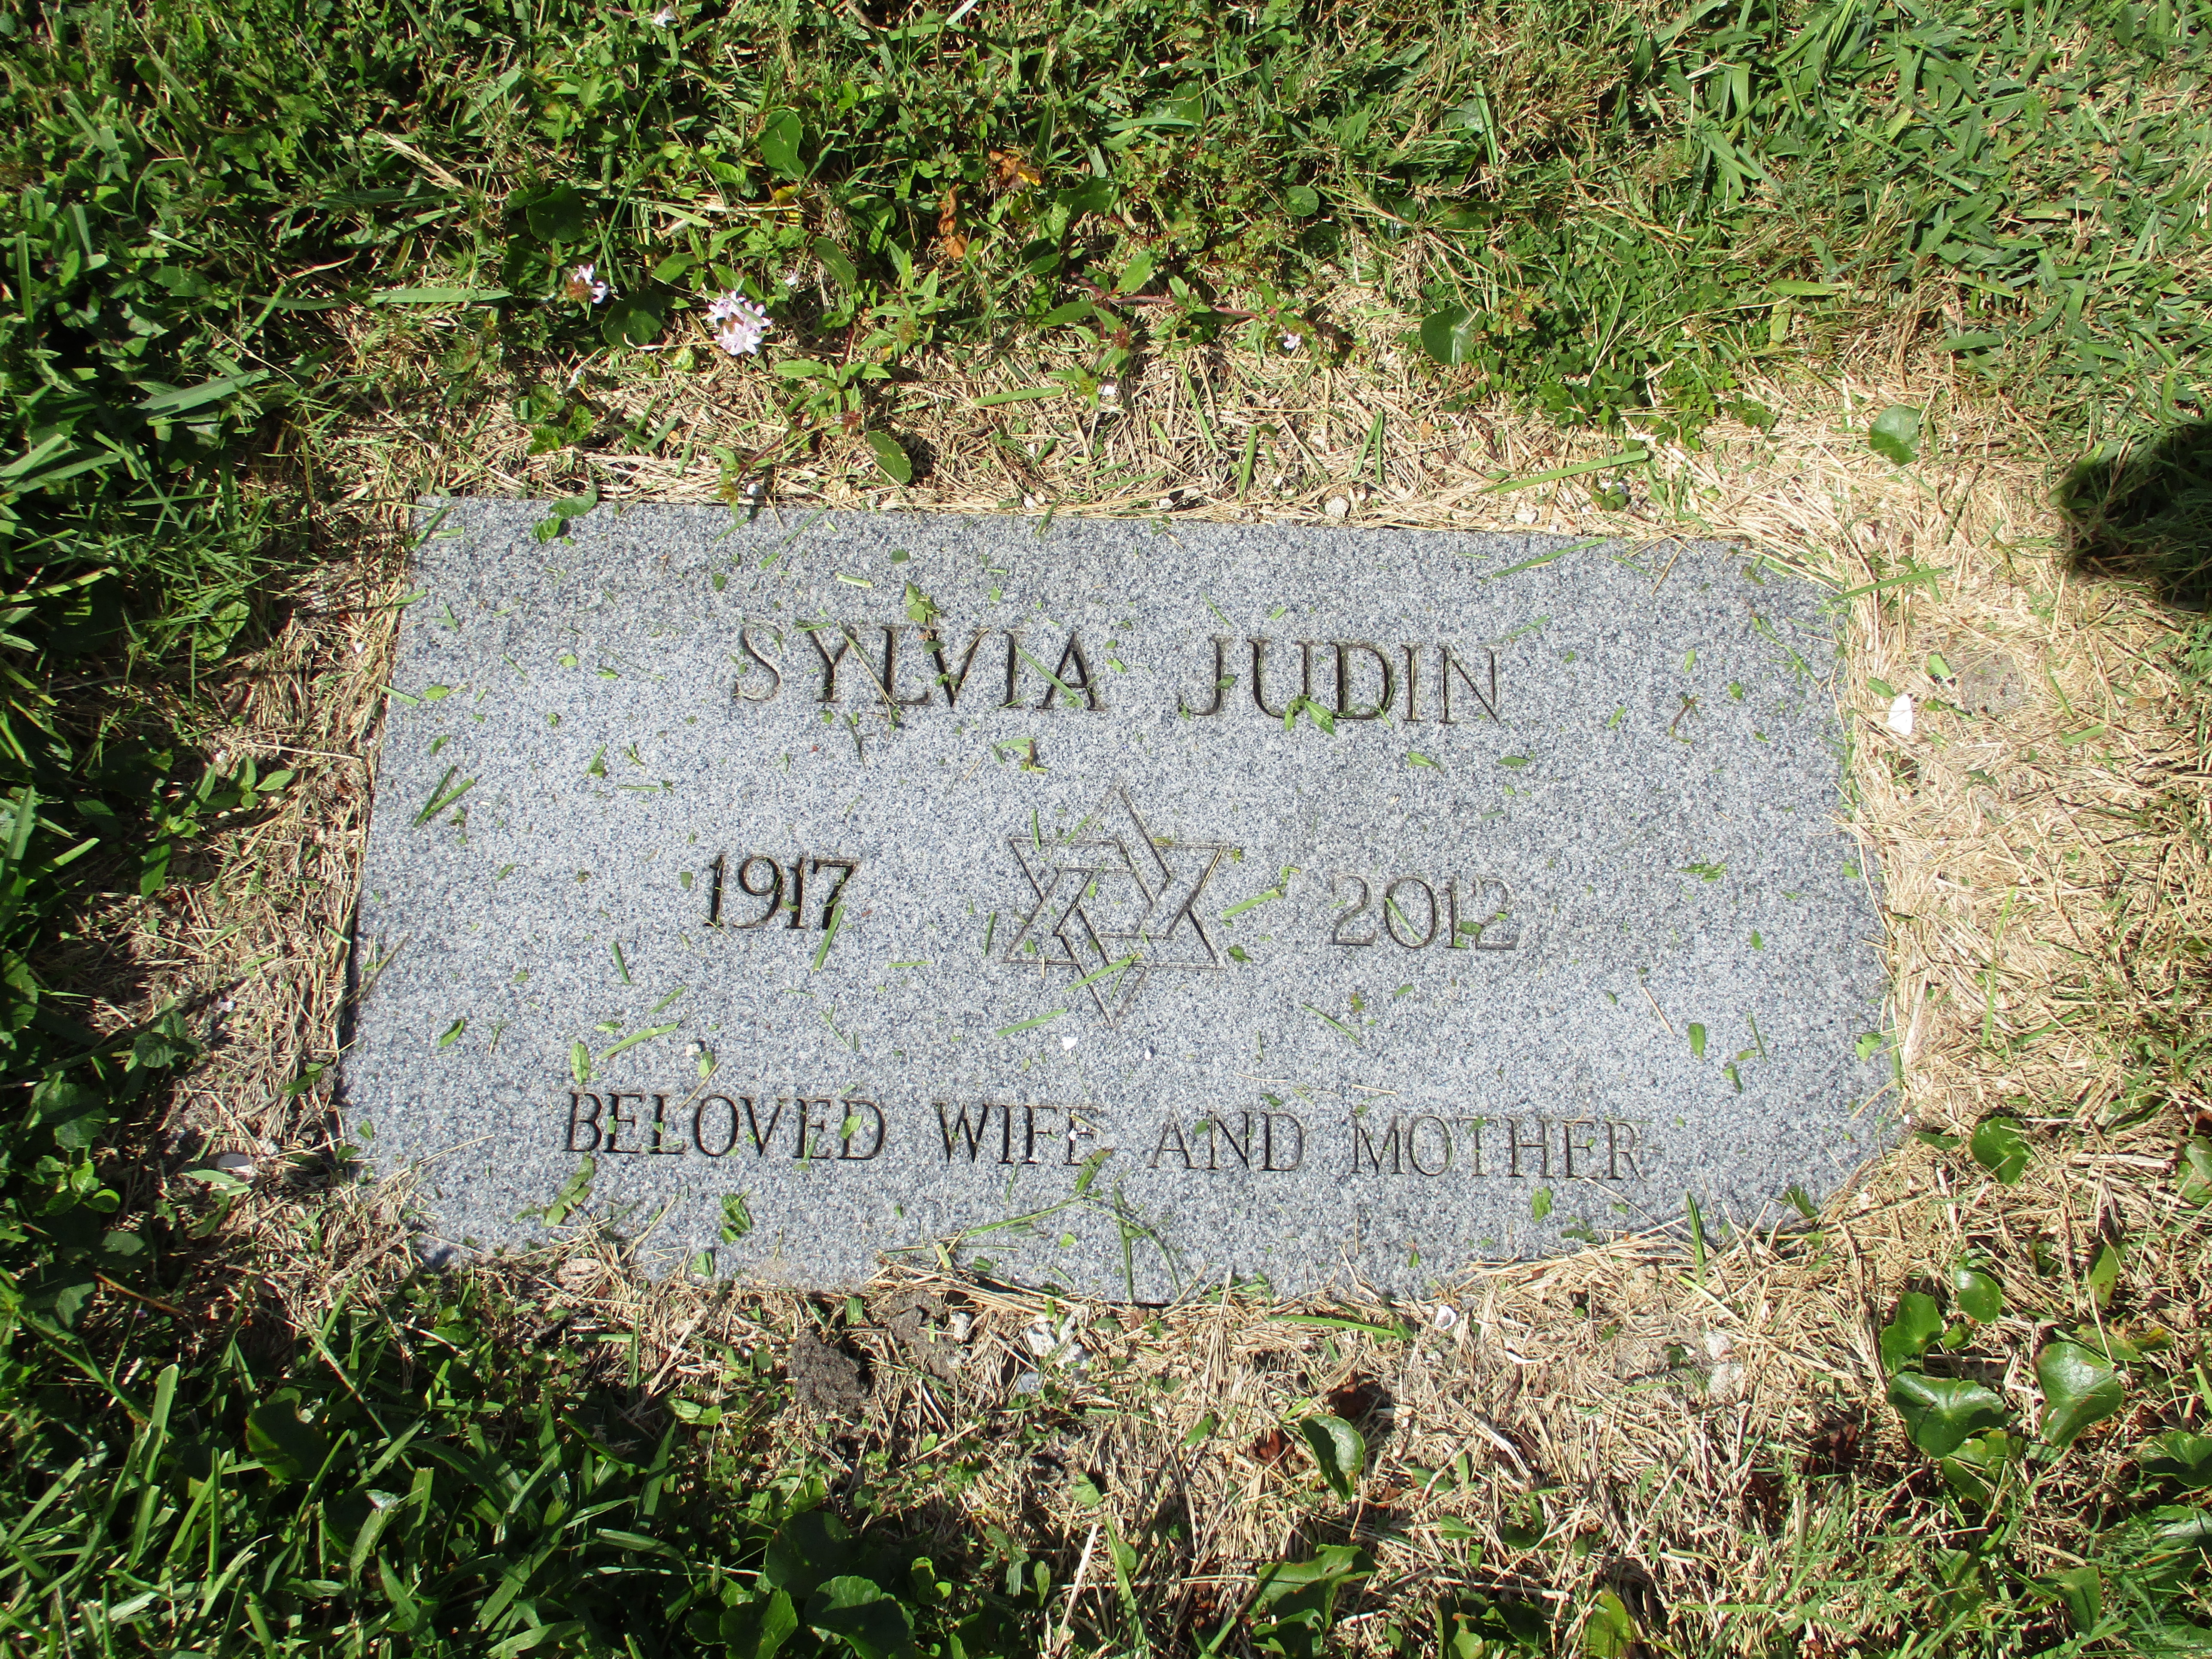 Sylvia Judin